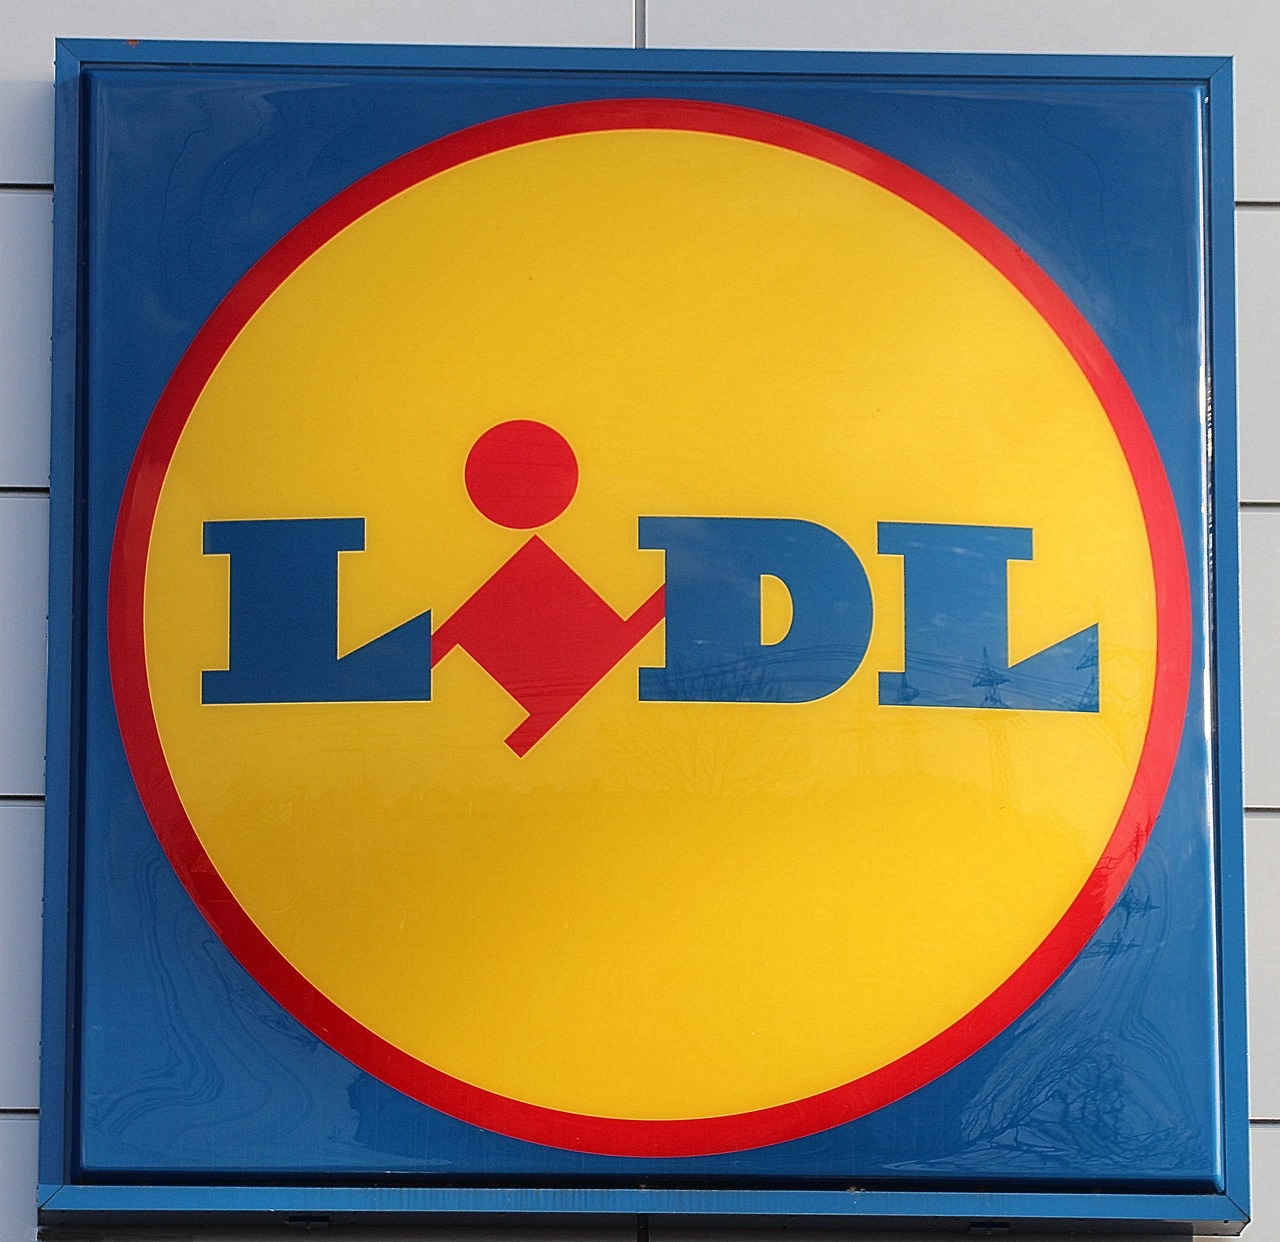 ¿Cuántas tiendas de Lidl hay en España?